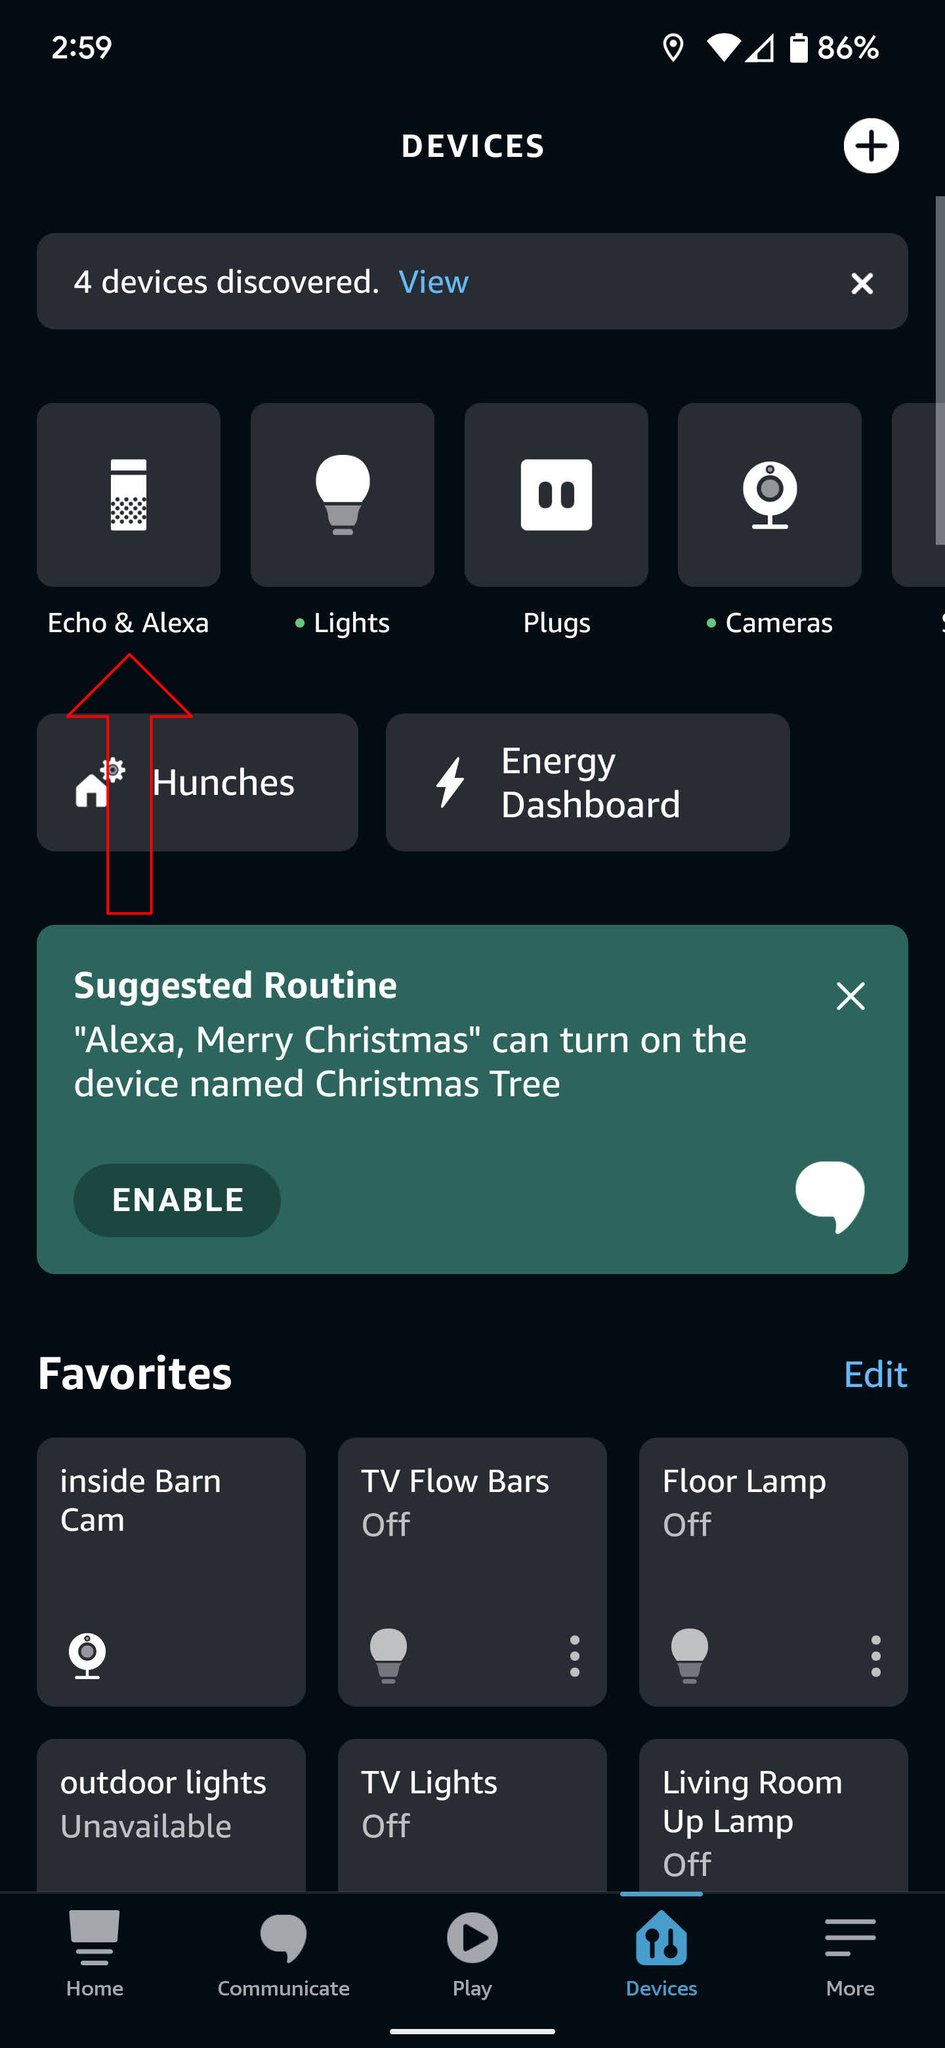 Captura de tela do Amazon Alexa Echo